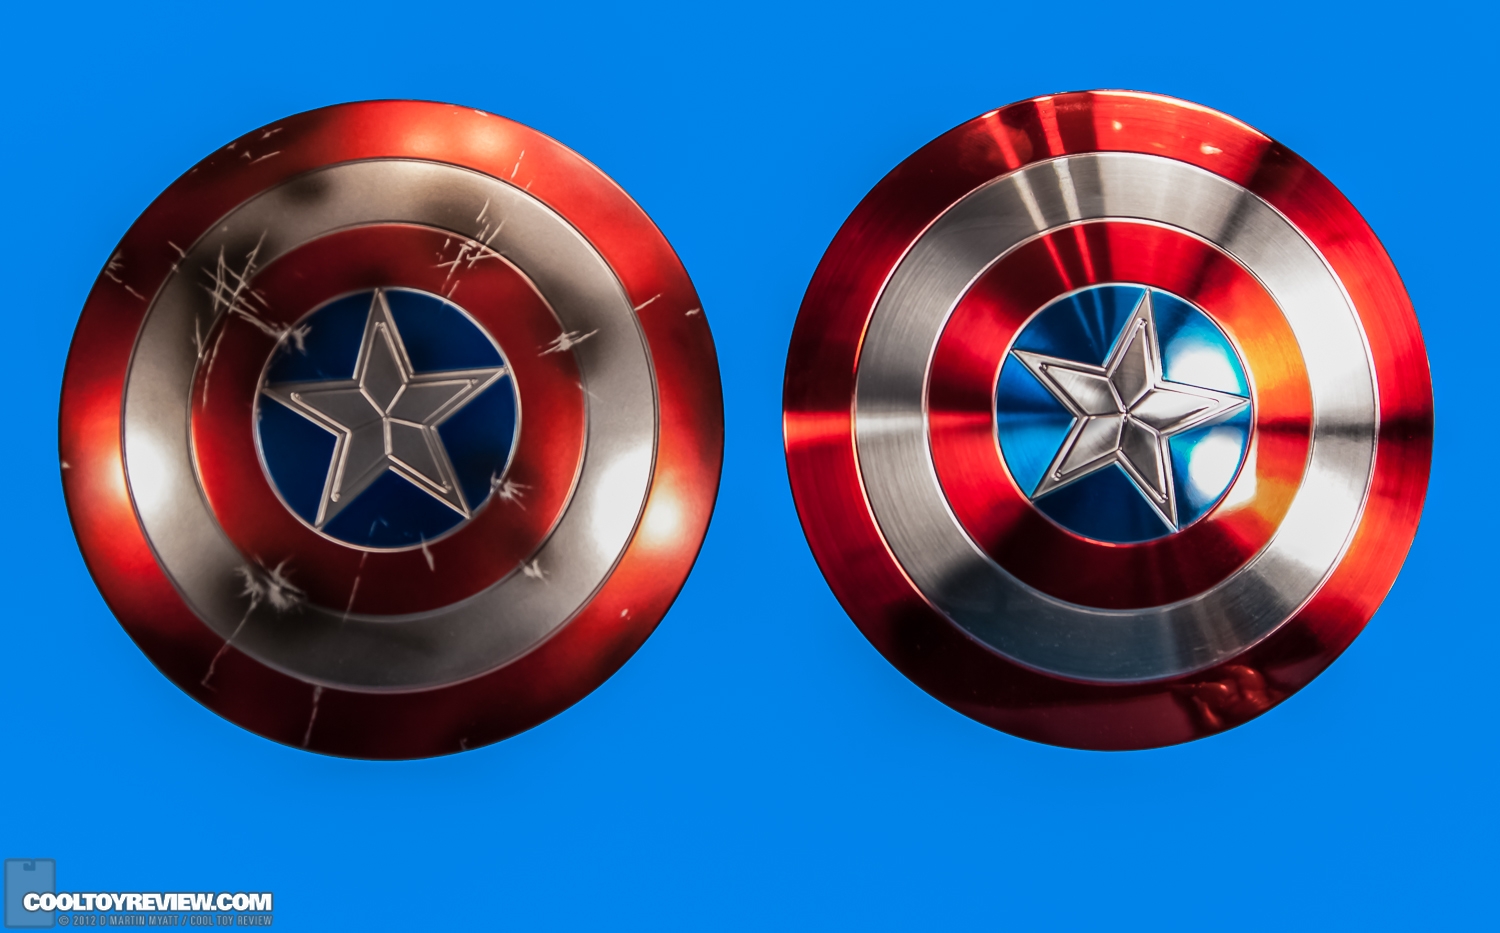 Captain_America_Avengers_Hot_Toys-22.jpg